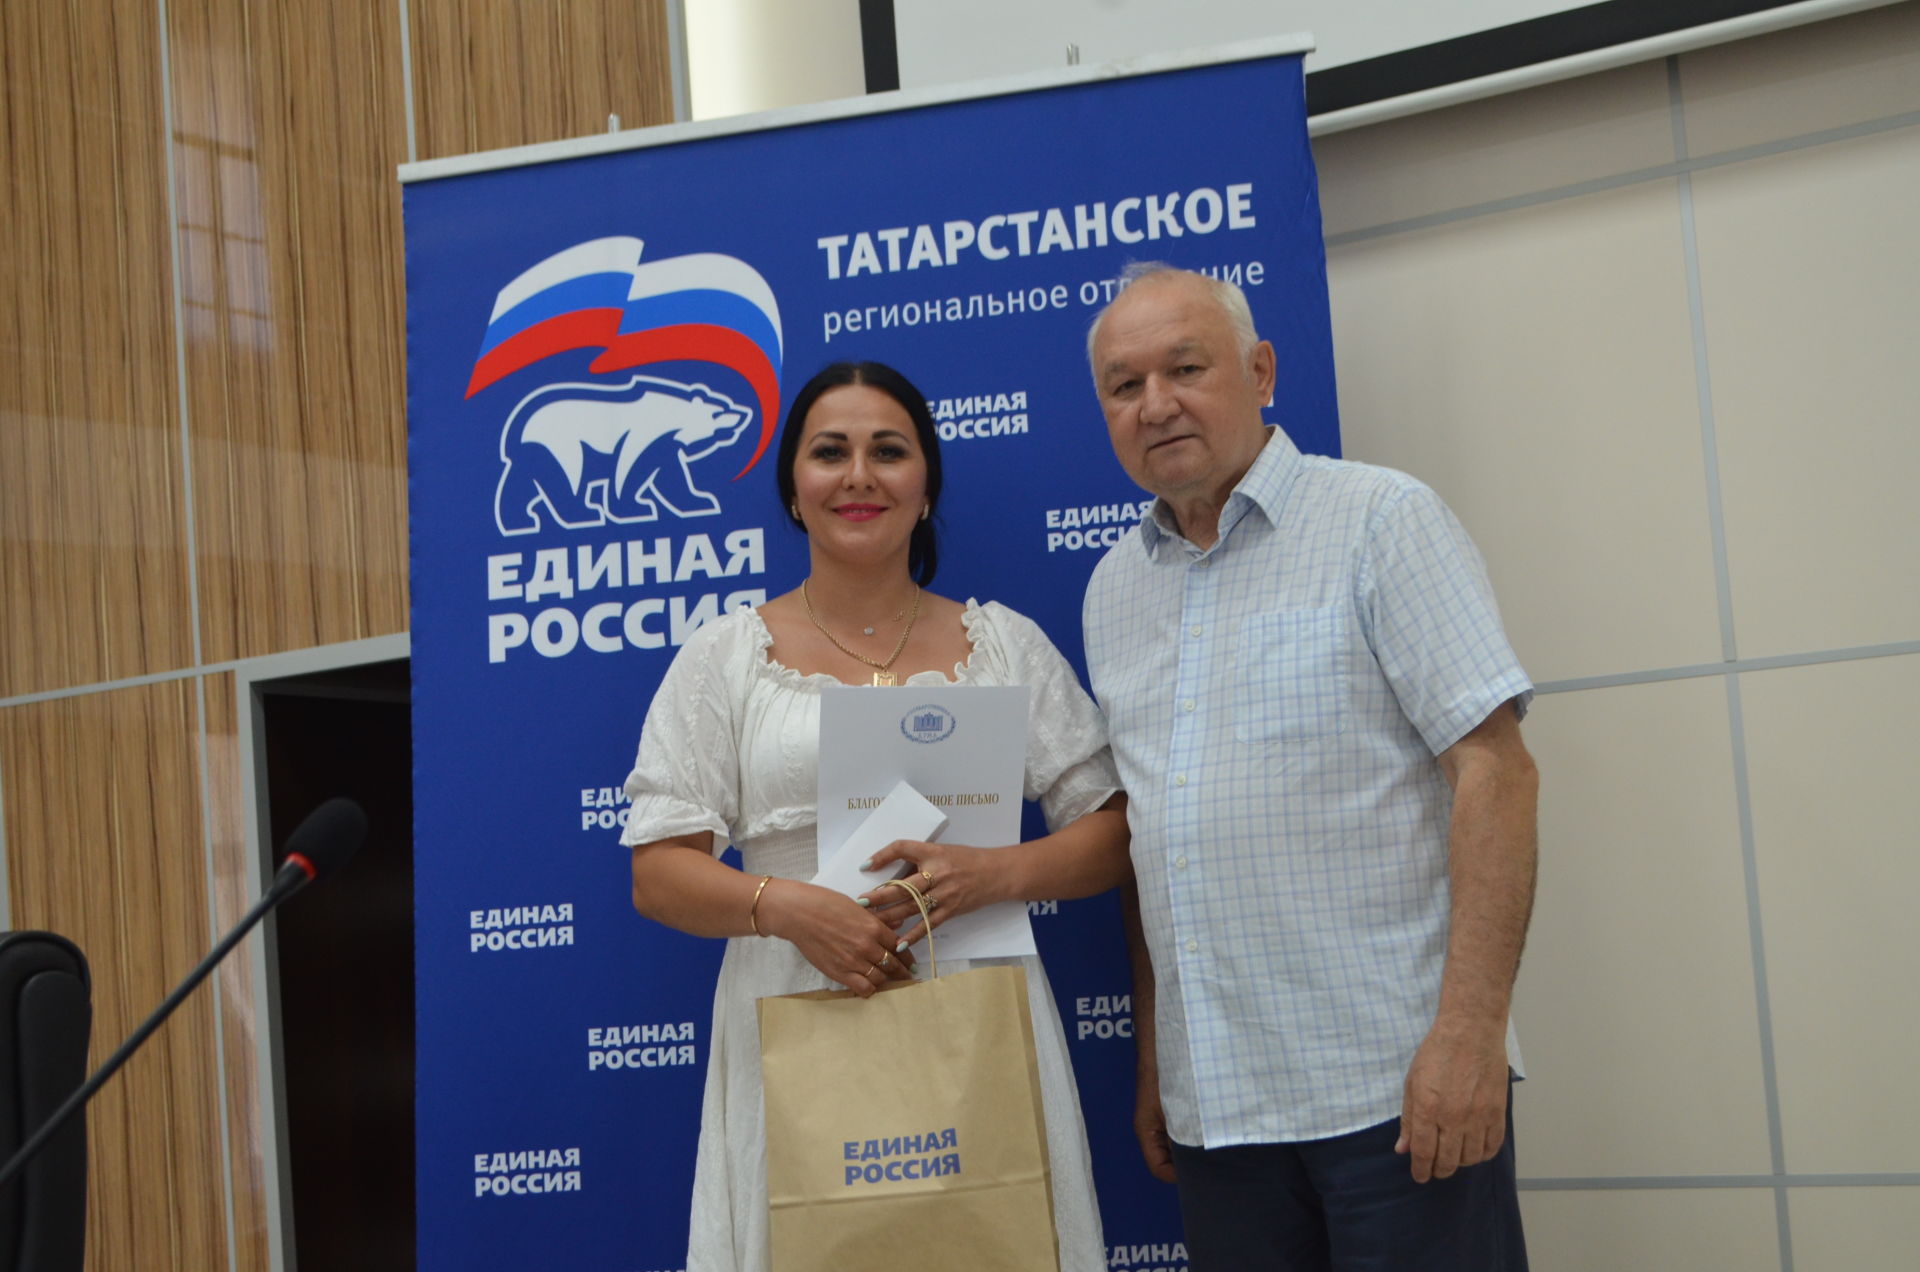 Ильдар Гильмутдинов: «Наш приоритет – это семьи»